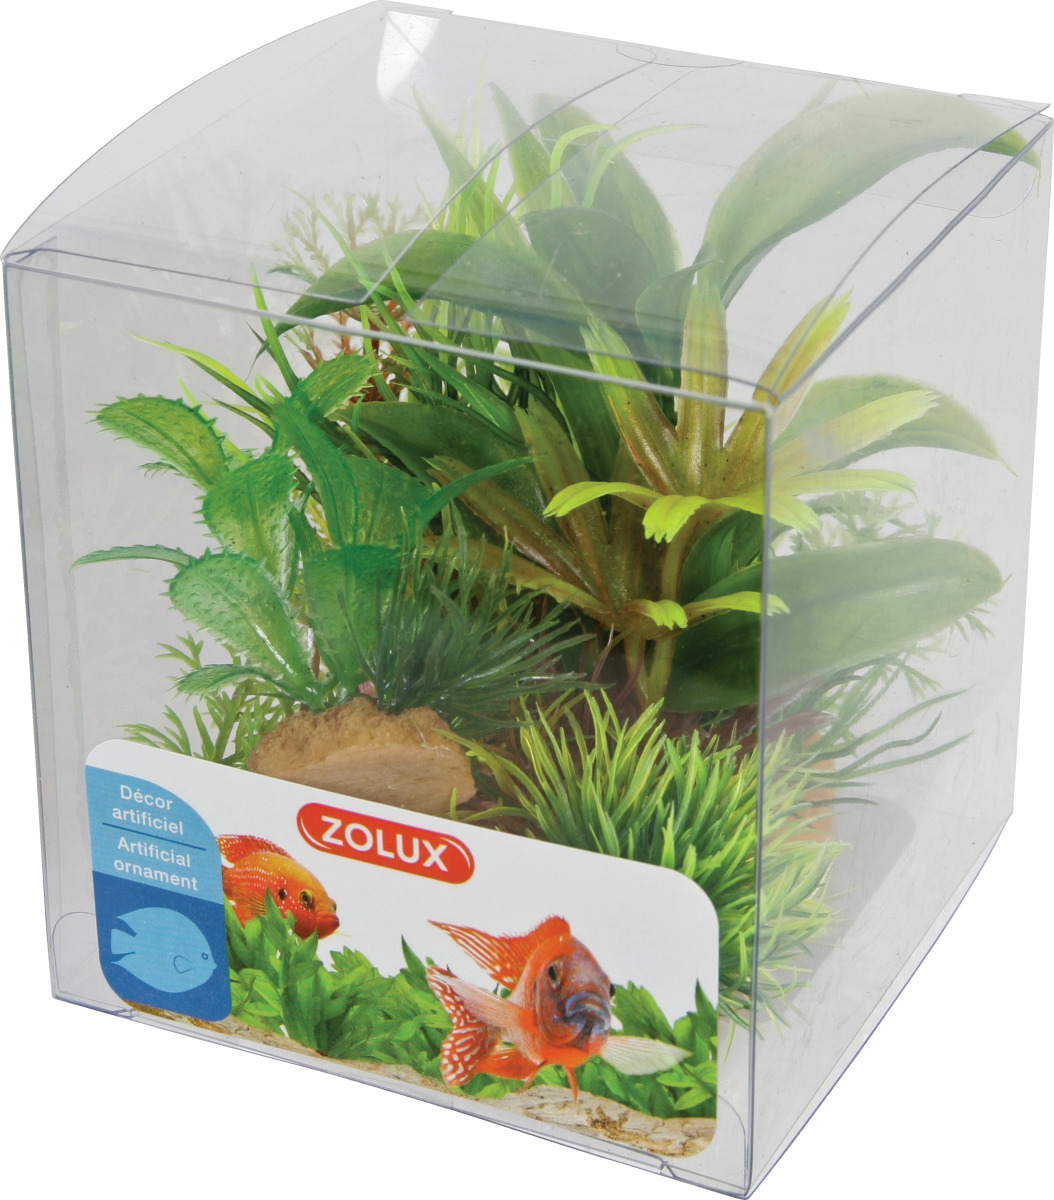 ZOLUX Boîte Mix 2 - Lot de 6 petites plantes artificielles 4 à 10 cm pour aquarium